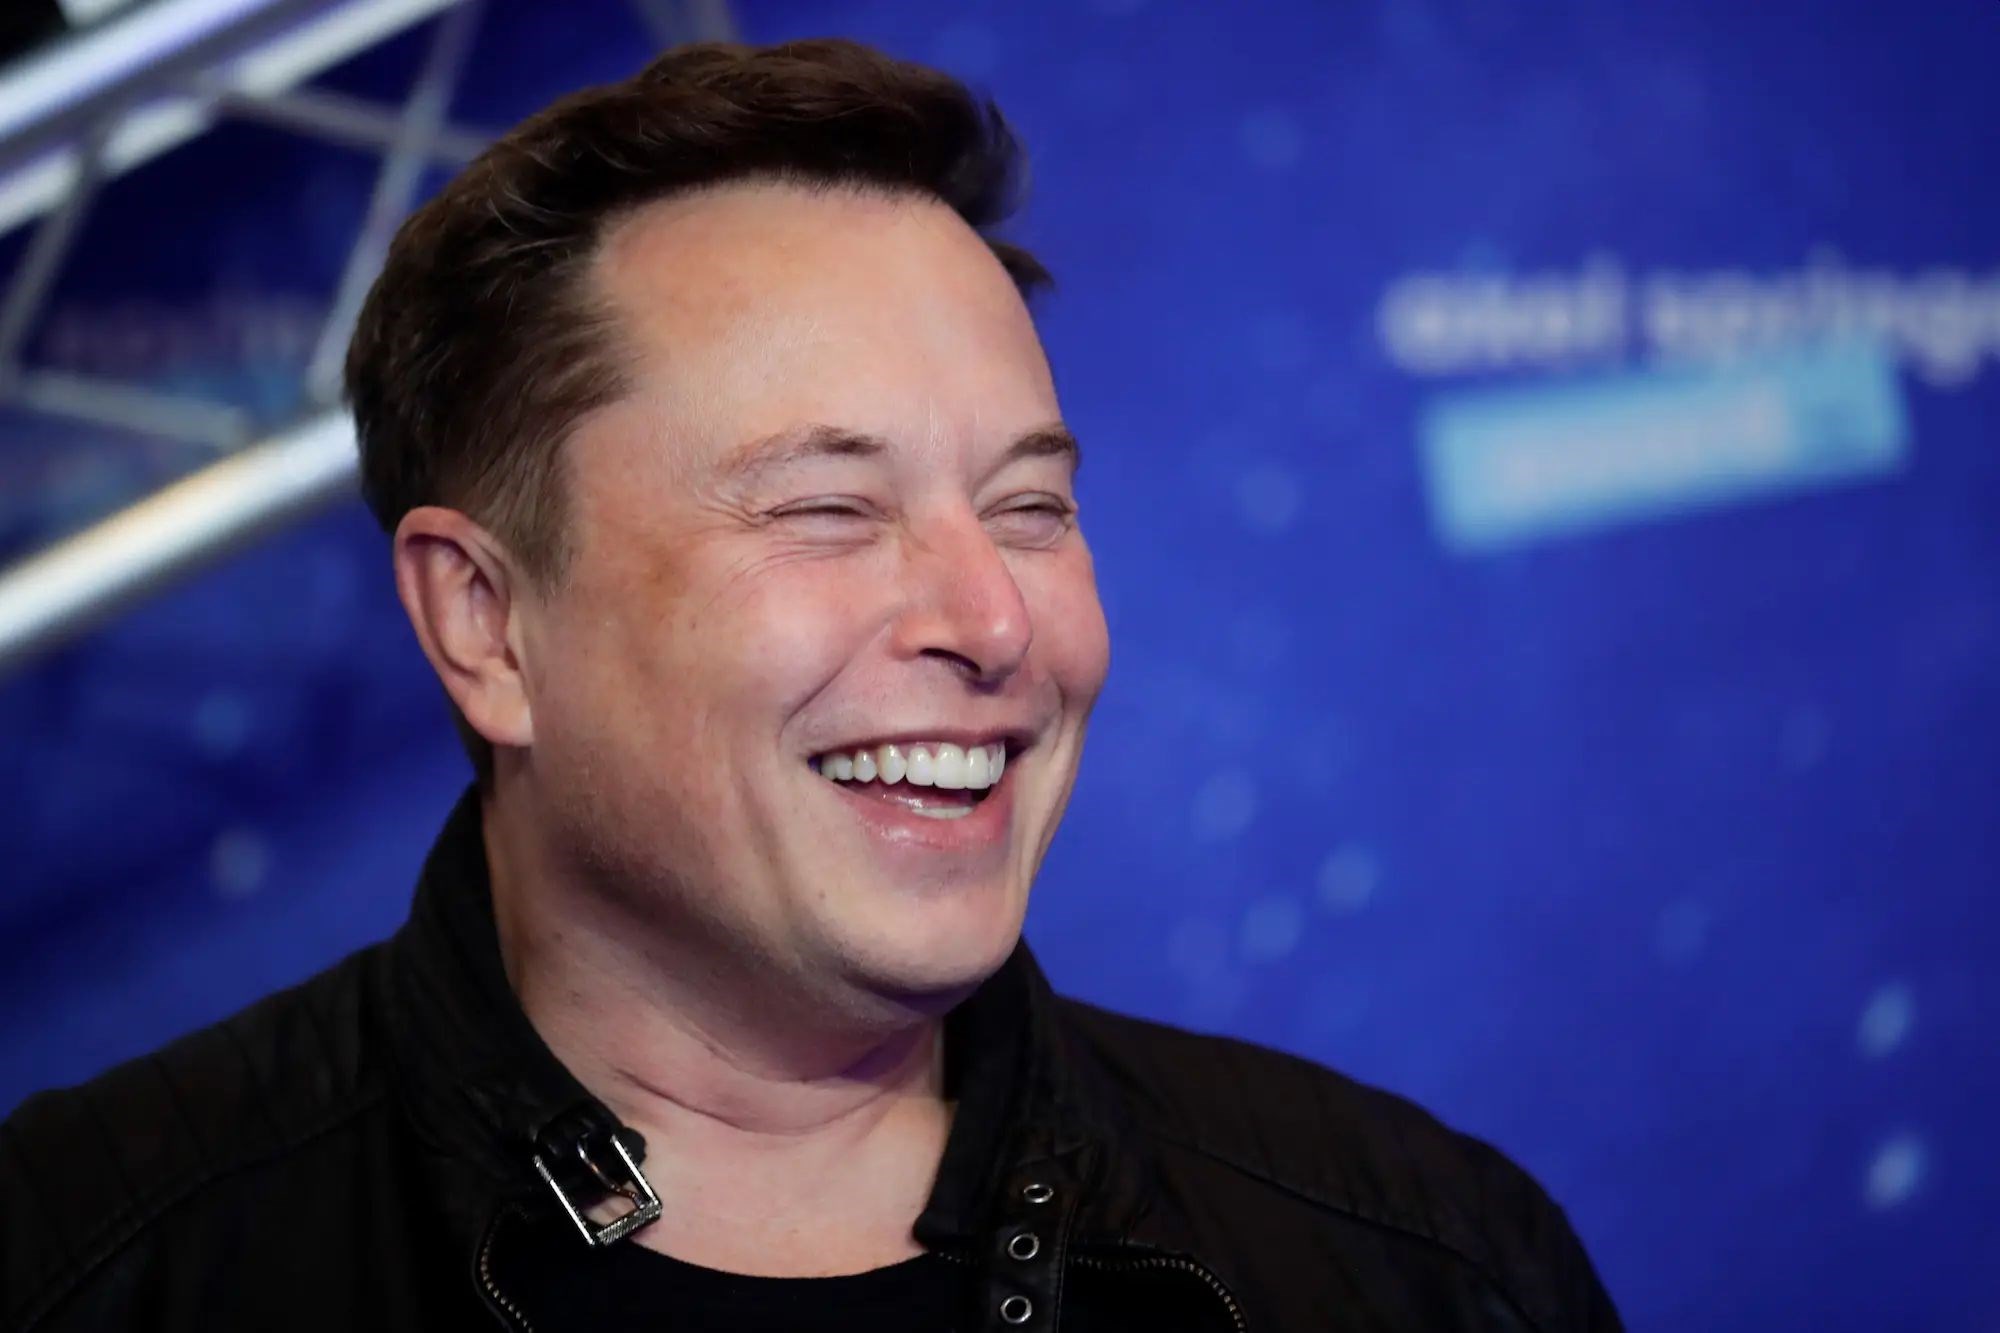 Elon Musk: Coca-Cola'yı satın alıp içine tekrar kokain koyacağım